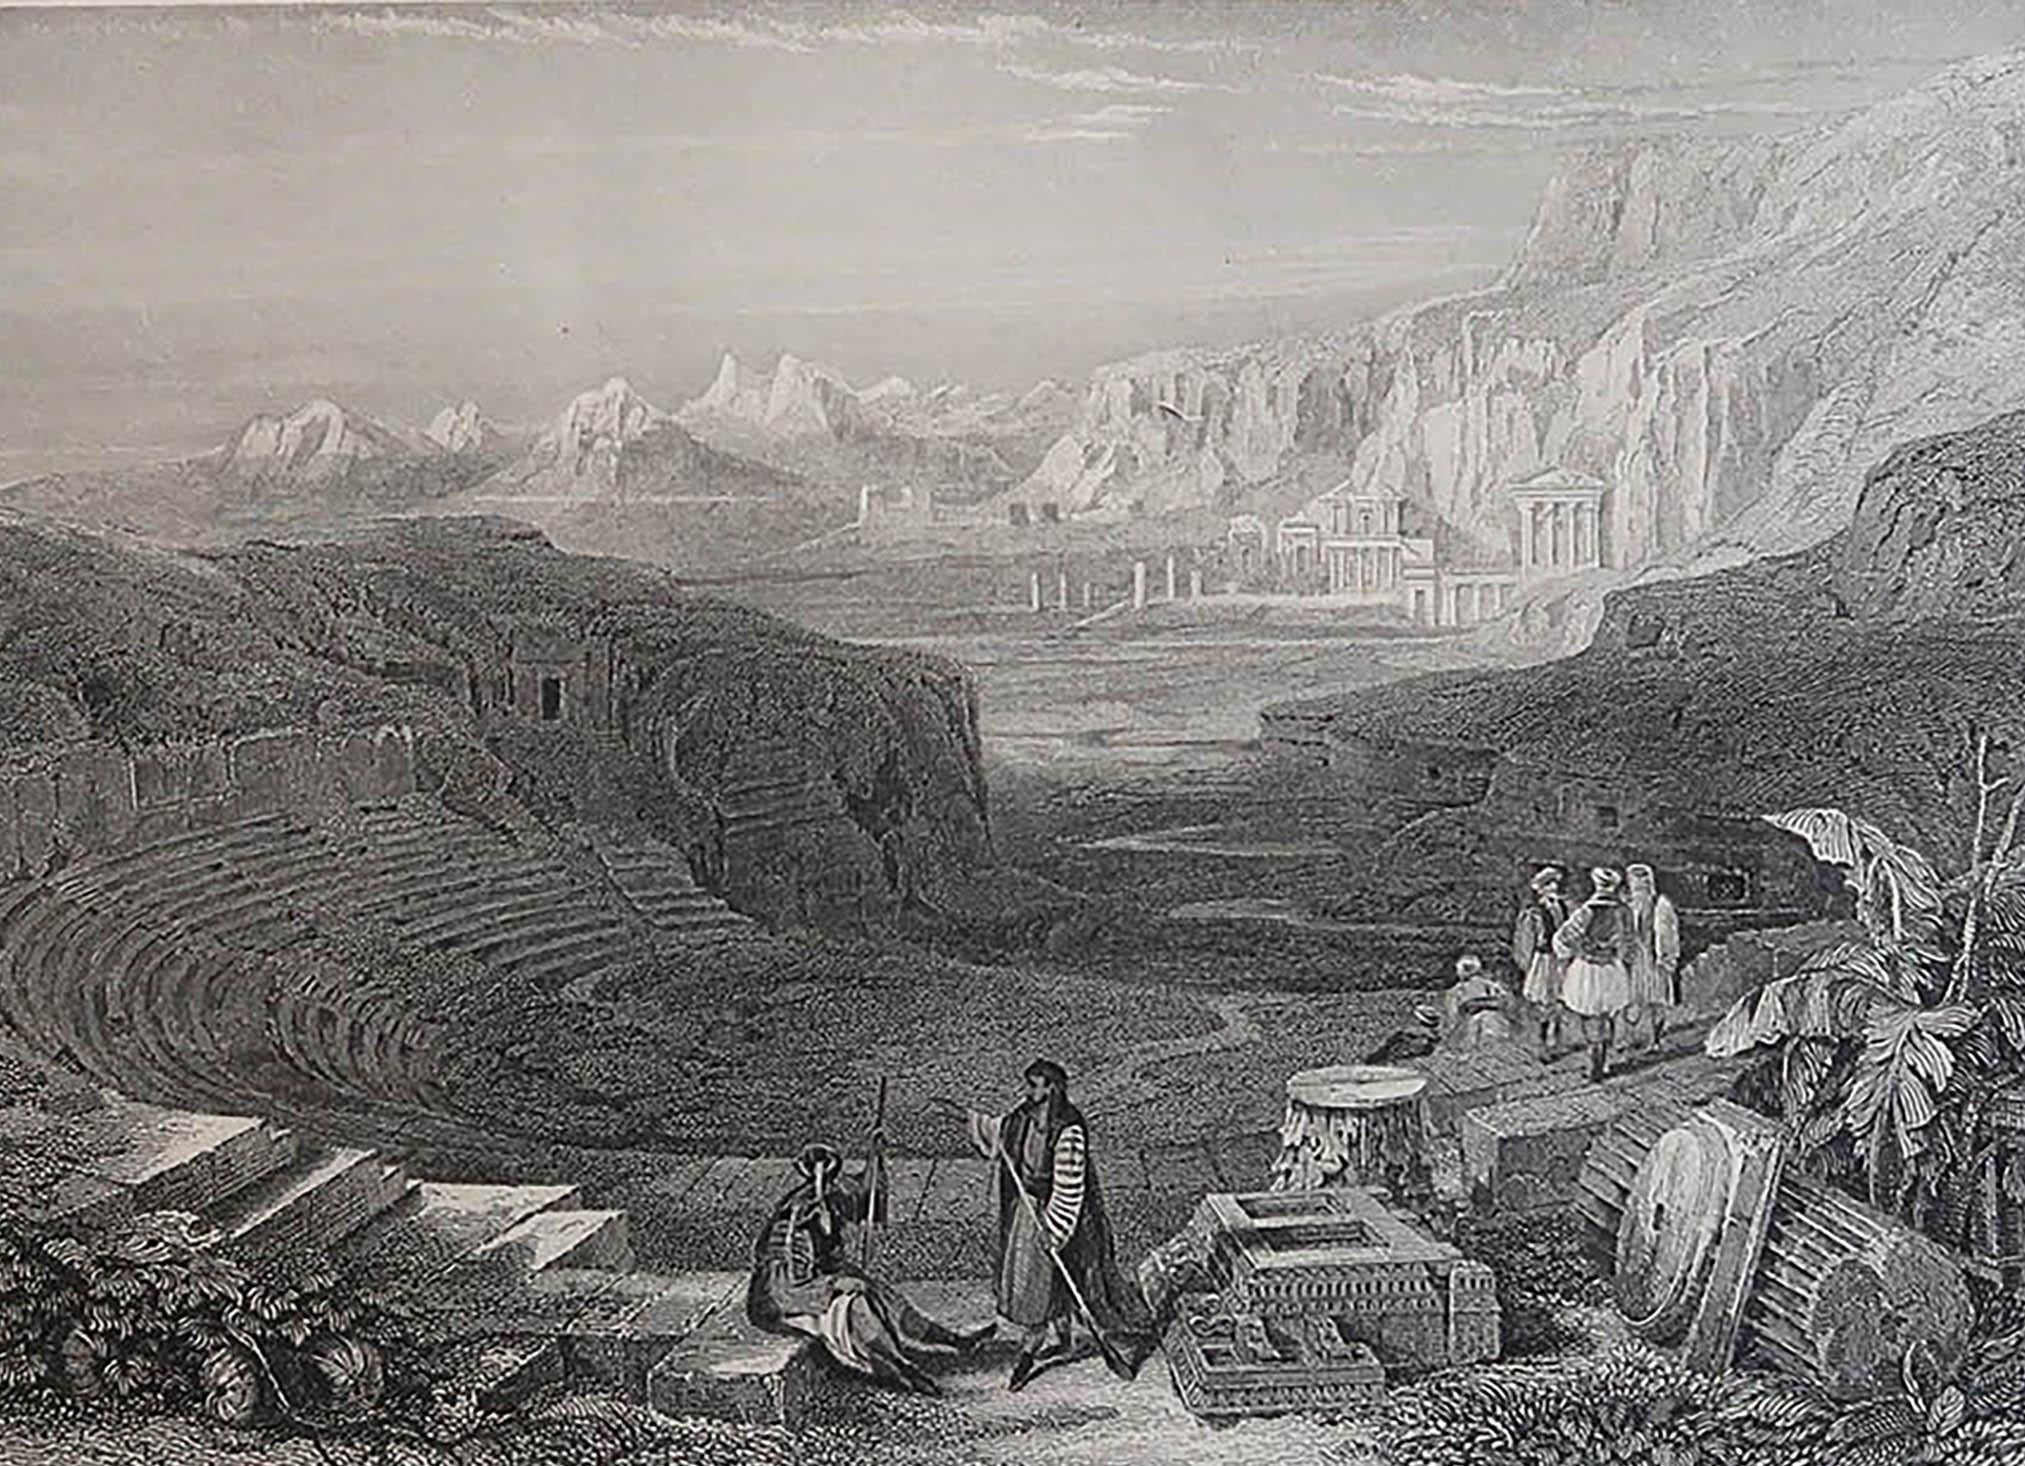 Magnifique image de Petra, en Jordanie

Gravure sur acier fine d'après David Roberts

Publié vers 1850

La mesure indiquée correspond au format du papier

Non encadré.

